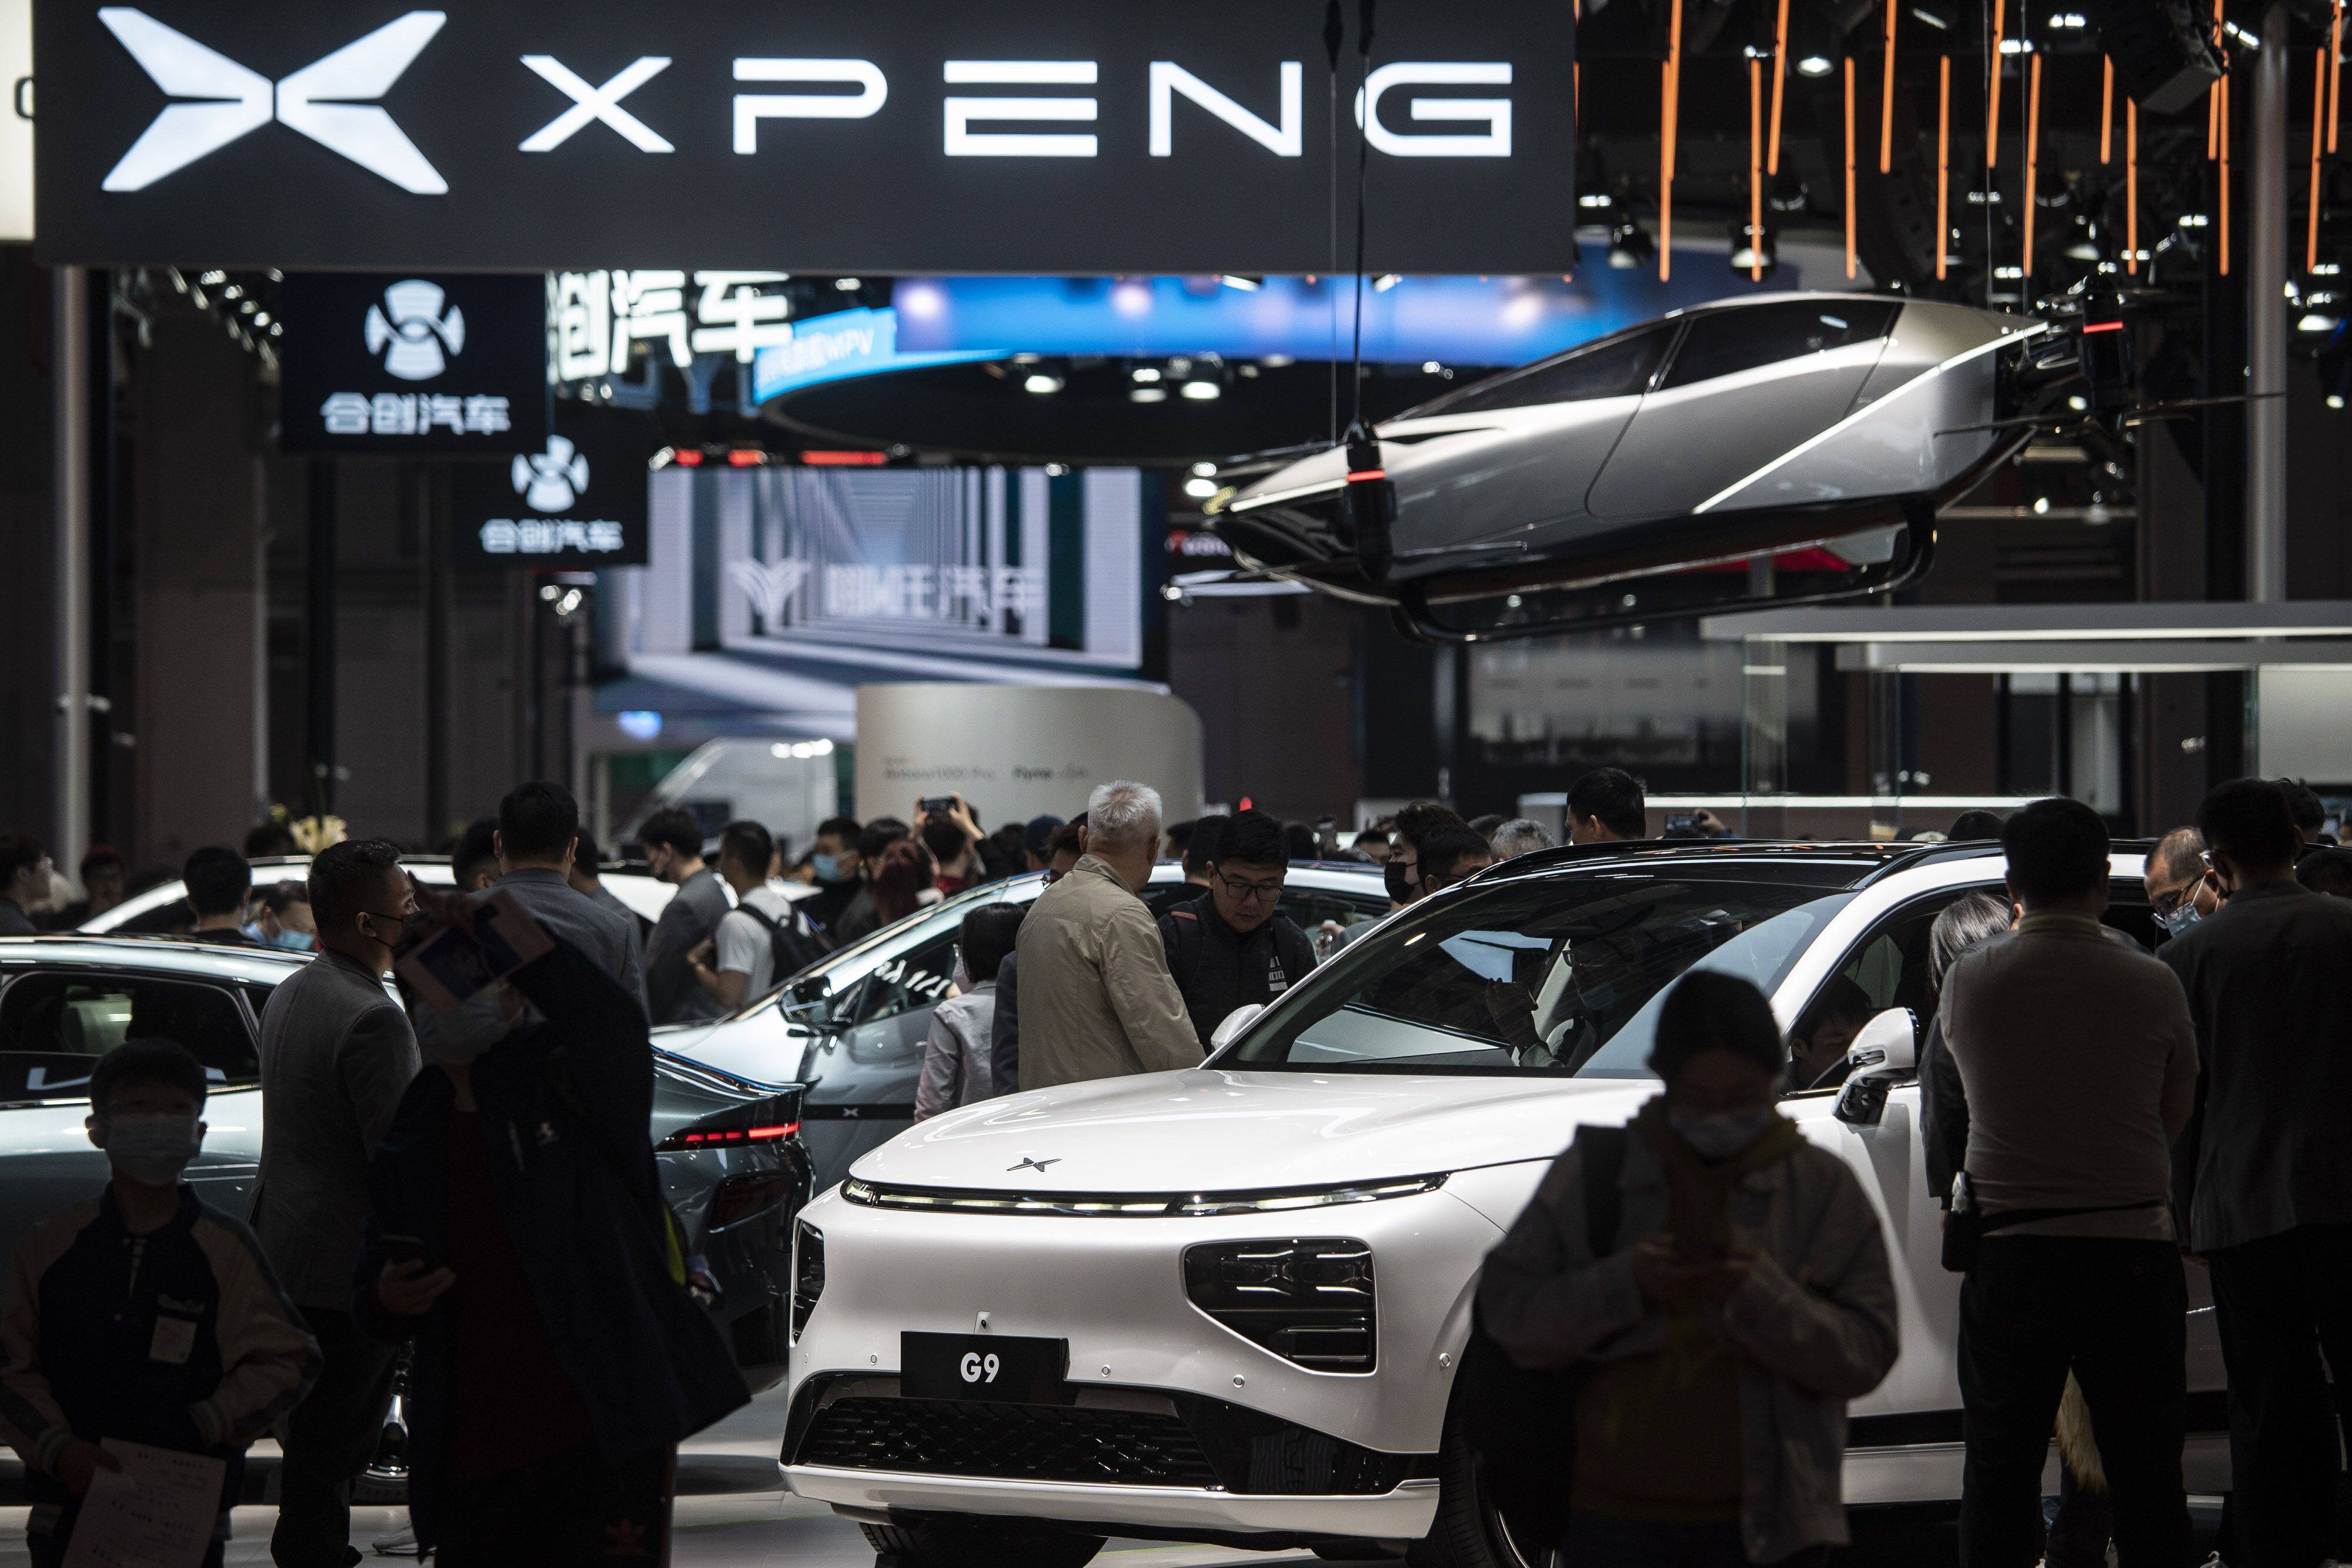 Kinh tế bất ổn, các startup xe điện Trung Quốc dốc sức vào các mẫu xe giá rẻ - Ảnh 1